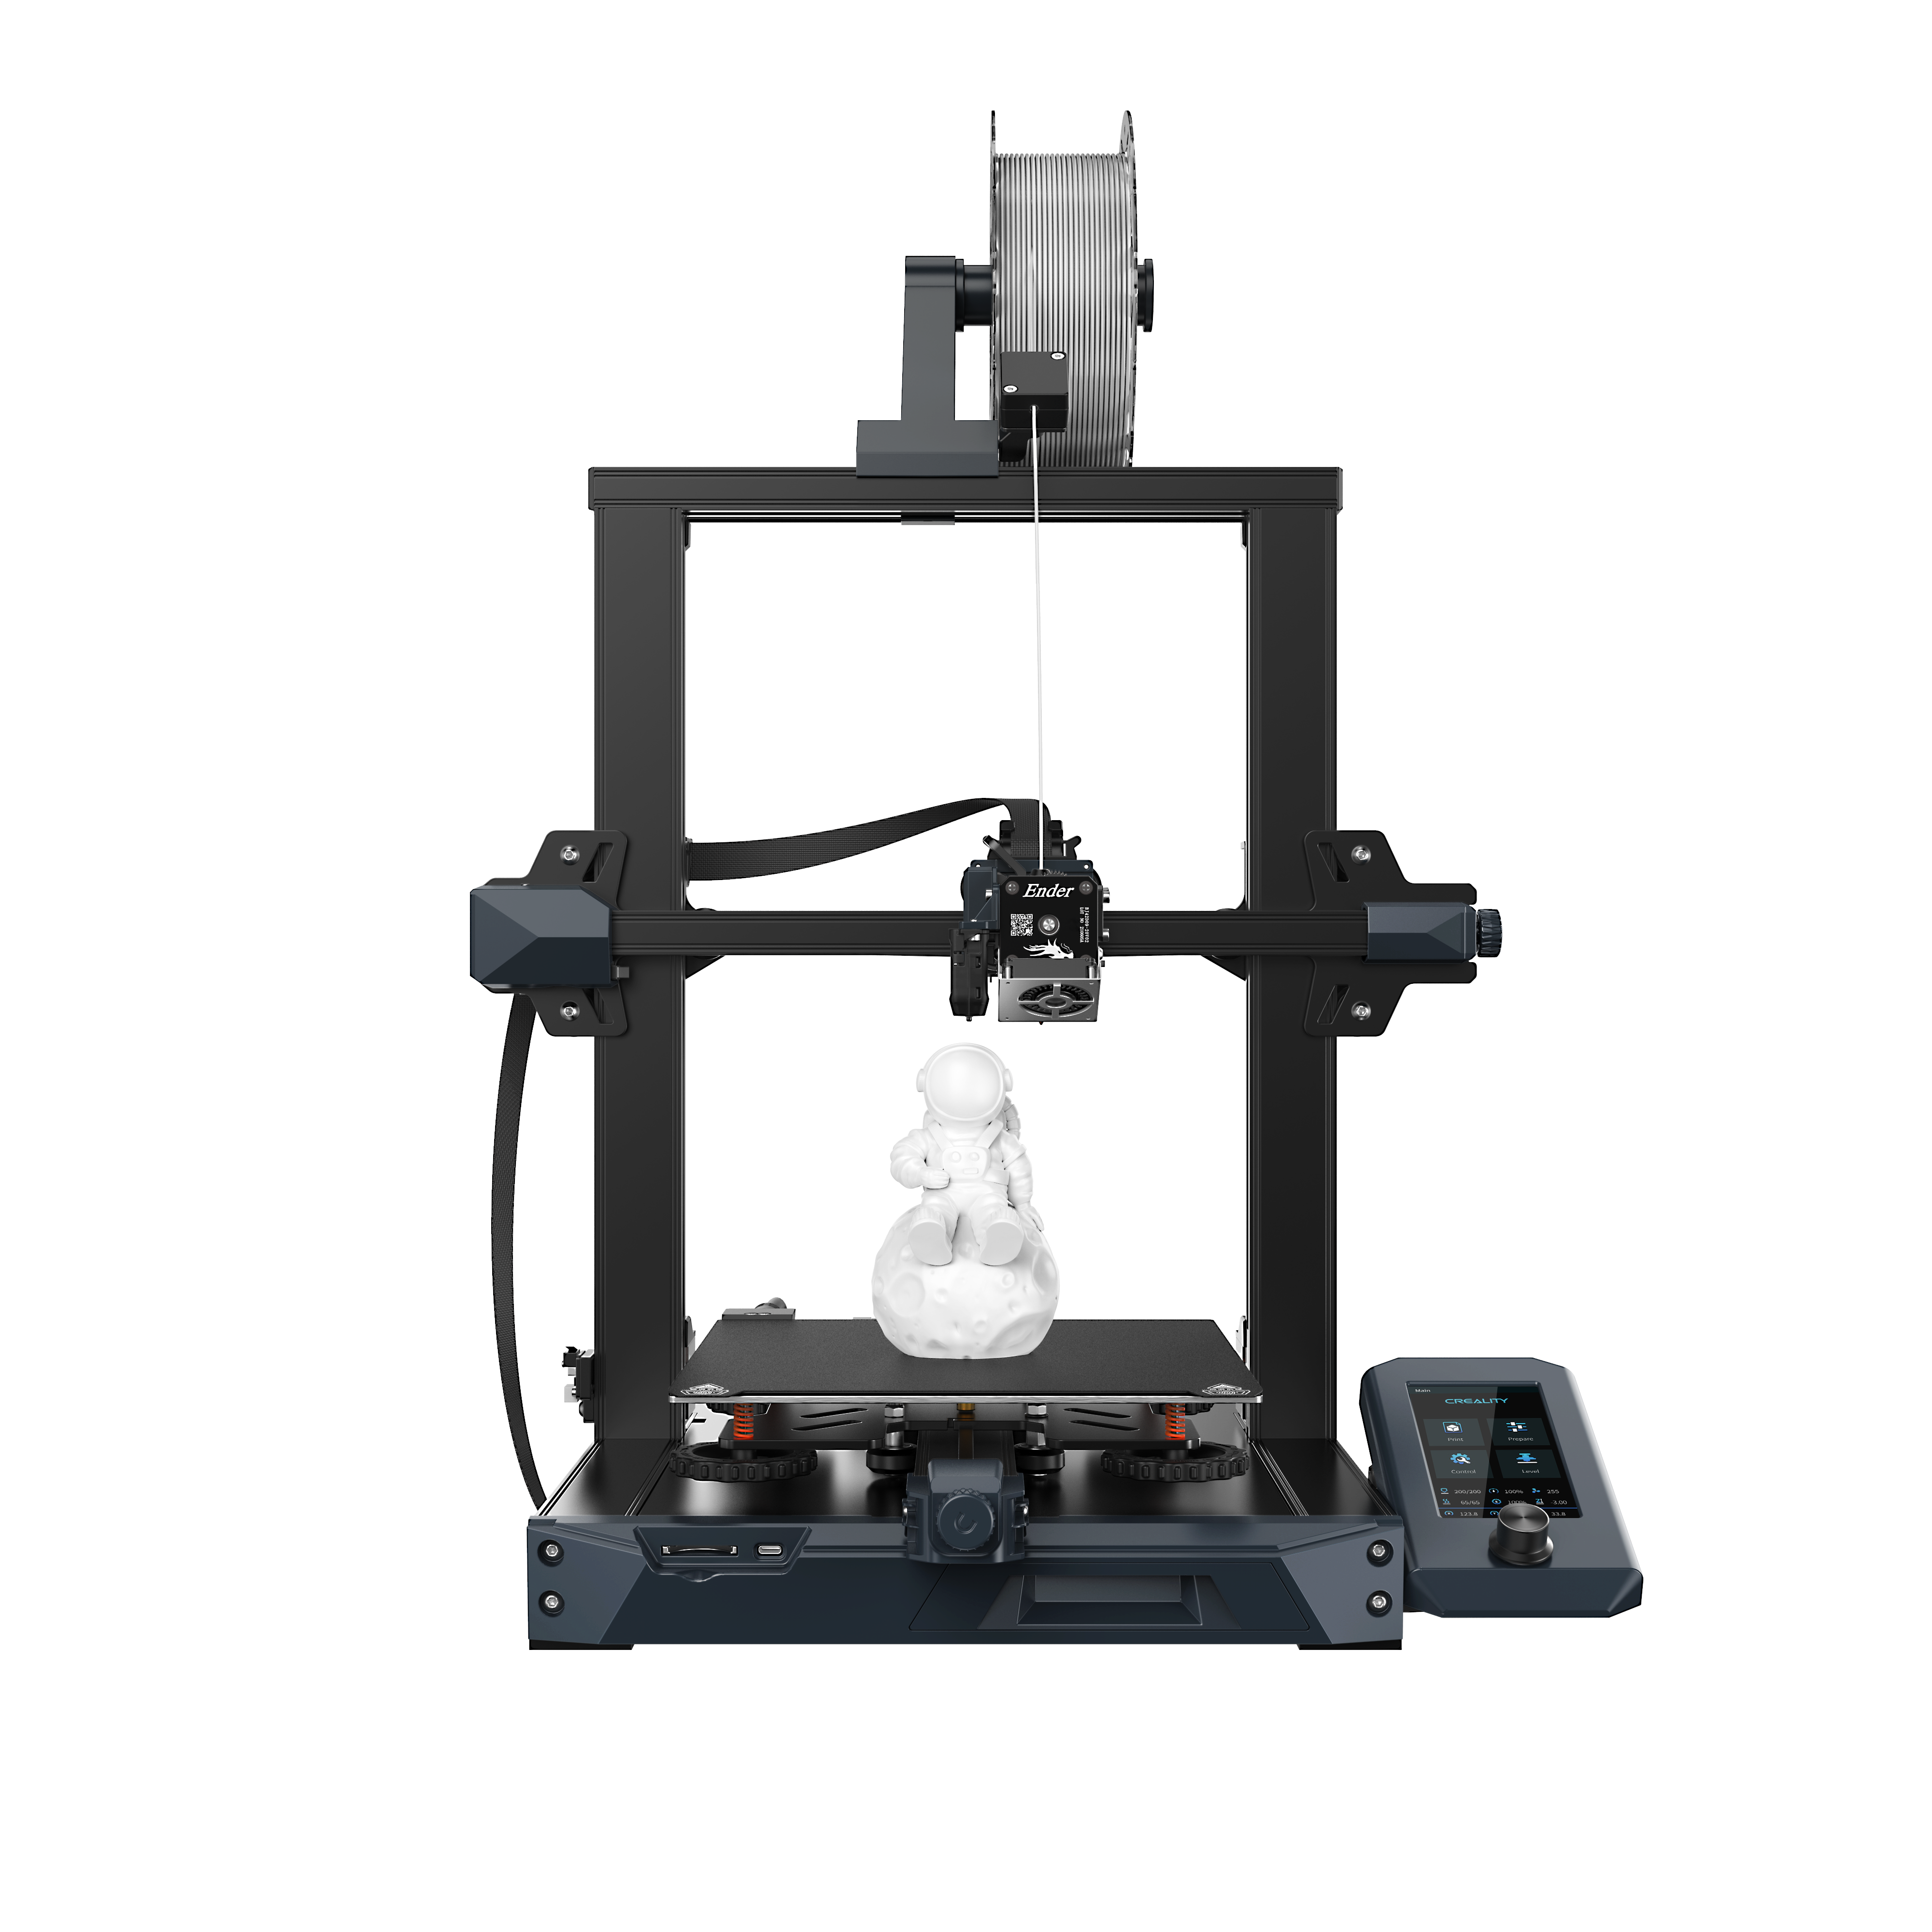 Impresora 3D FDM de alta calidad